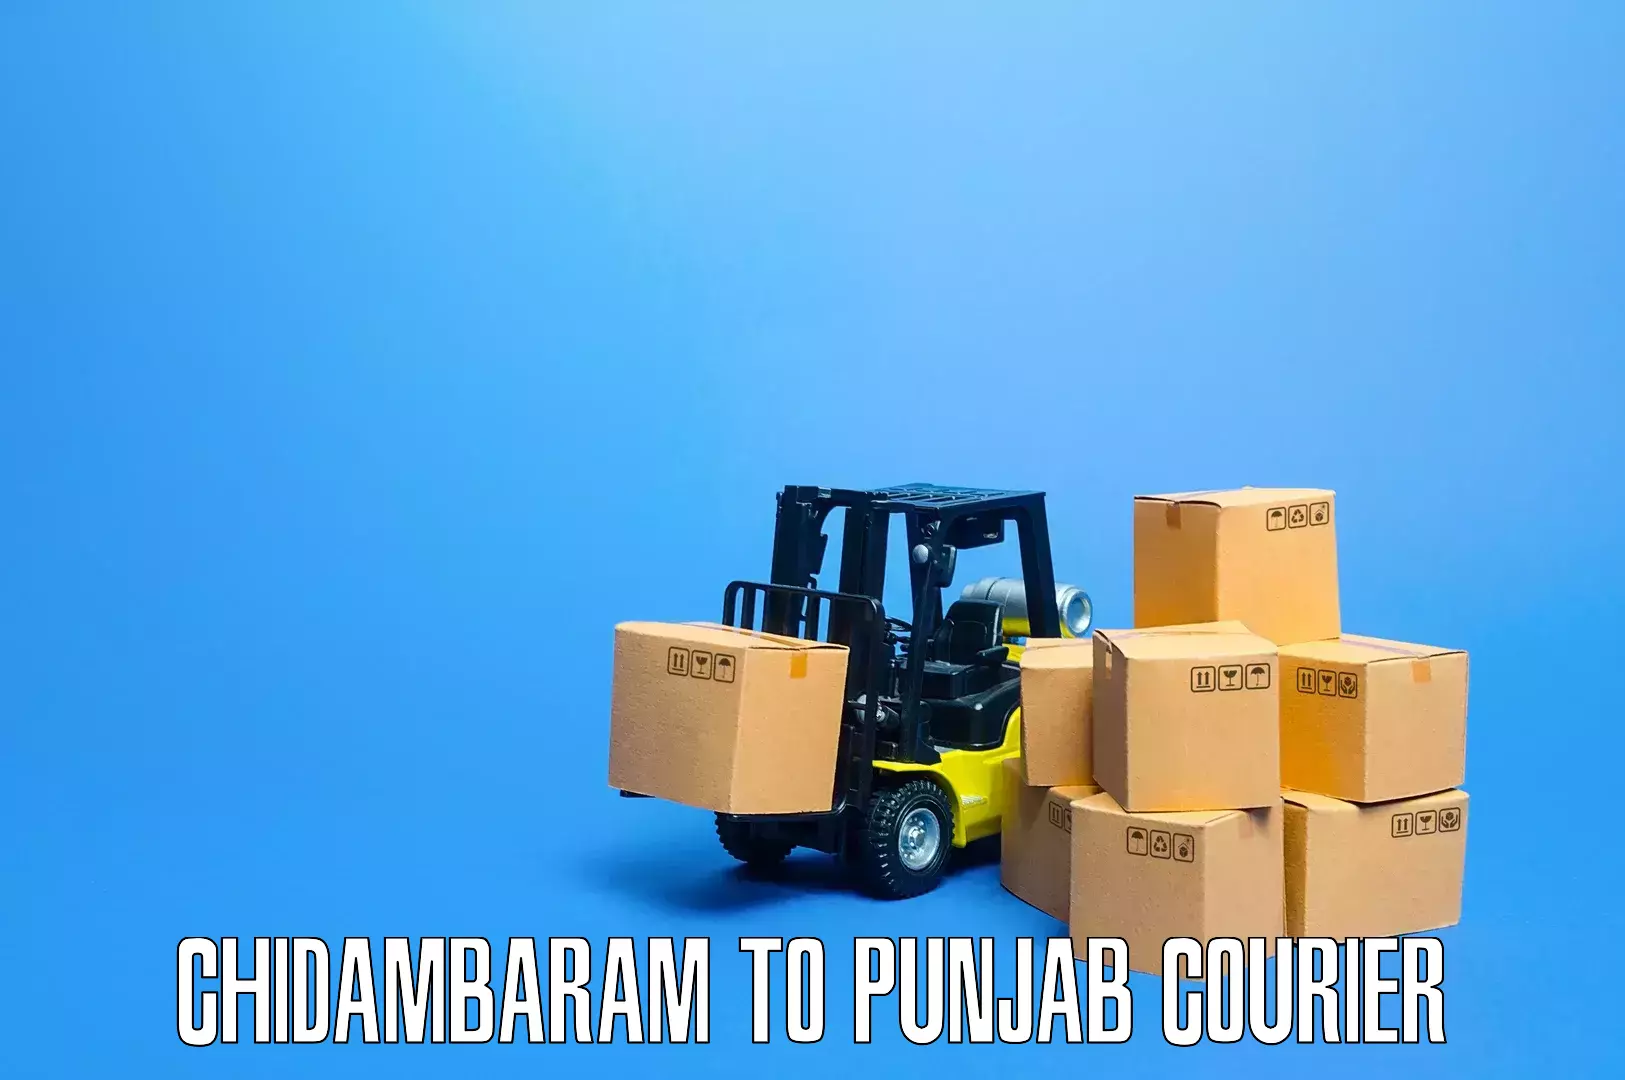 Residential furniture transport Chidambaram to Punjab